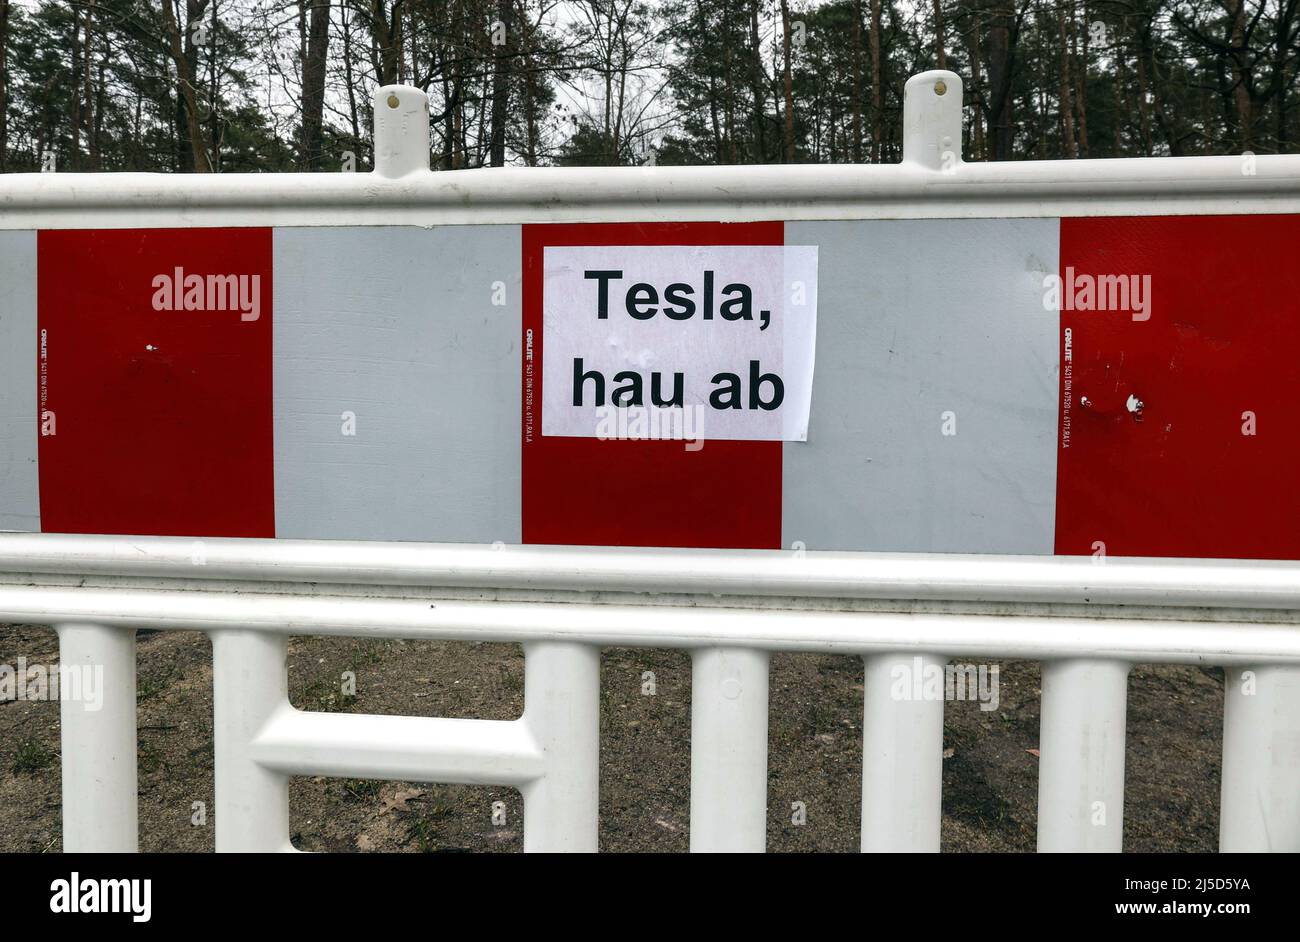 Gruenheide, 26.02.2022 - Protestschild gegen den Bau des Tesla Gigafactory in Gruenheide. Viele Bürger in und um Gruenheide sind gegen den Bau der Tesla-Fabrik. [Automatisierte Übersetzung] Stockfoto